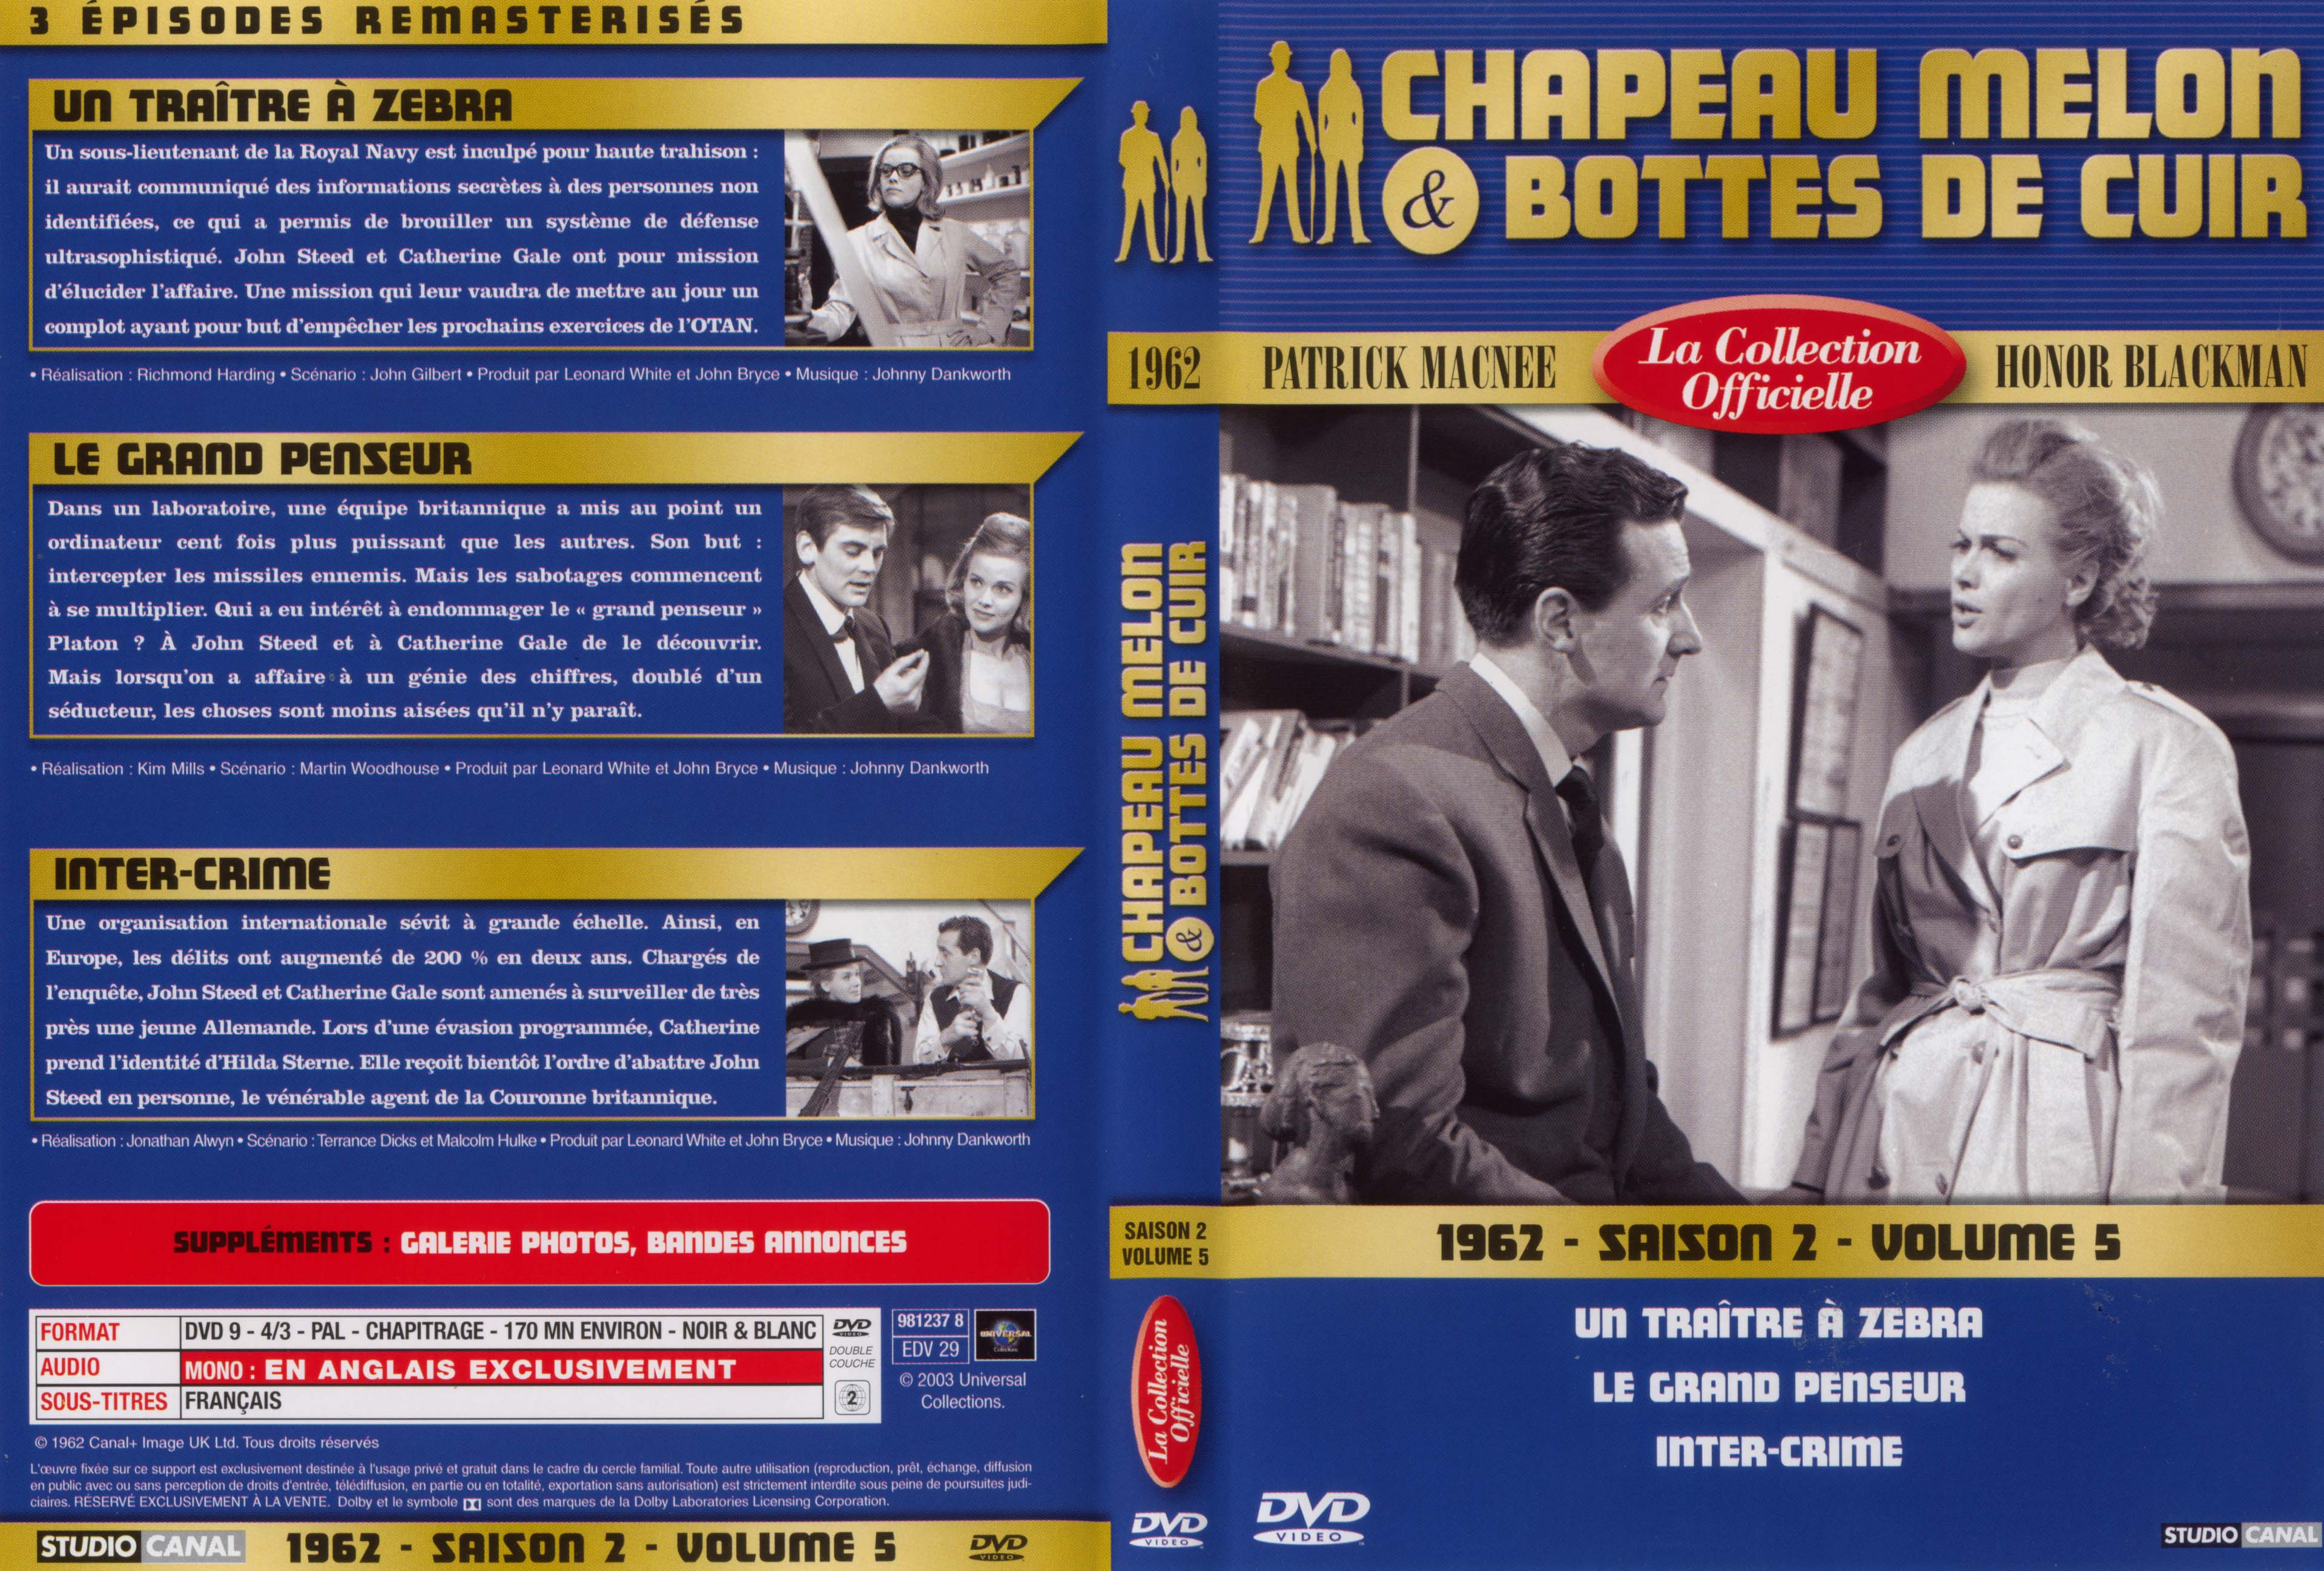 Jaquette DVD Chapeau melon et bottes de cuir 1962 saison 2 vol 5